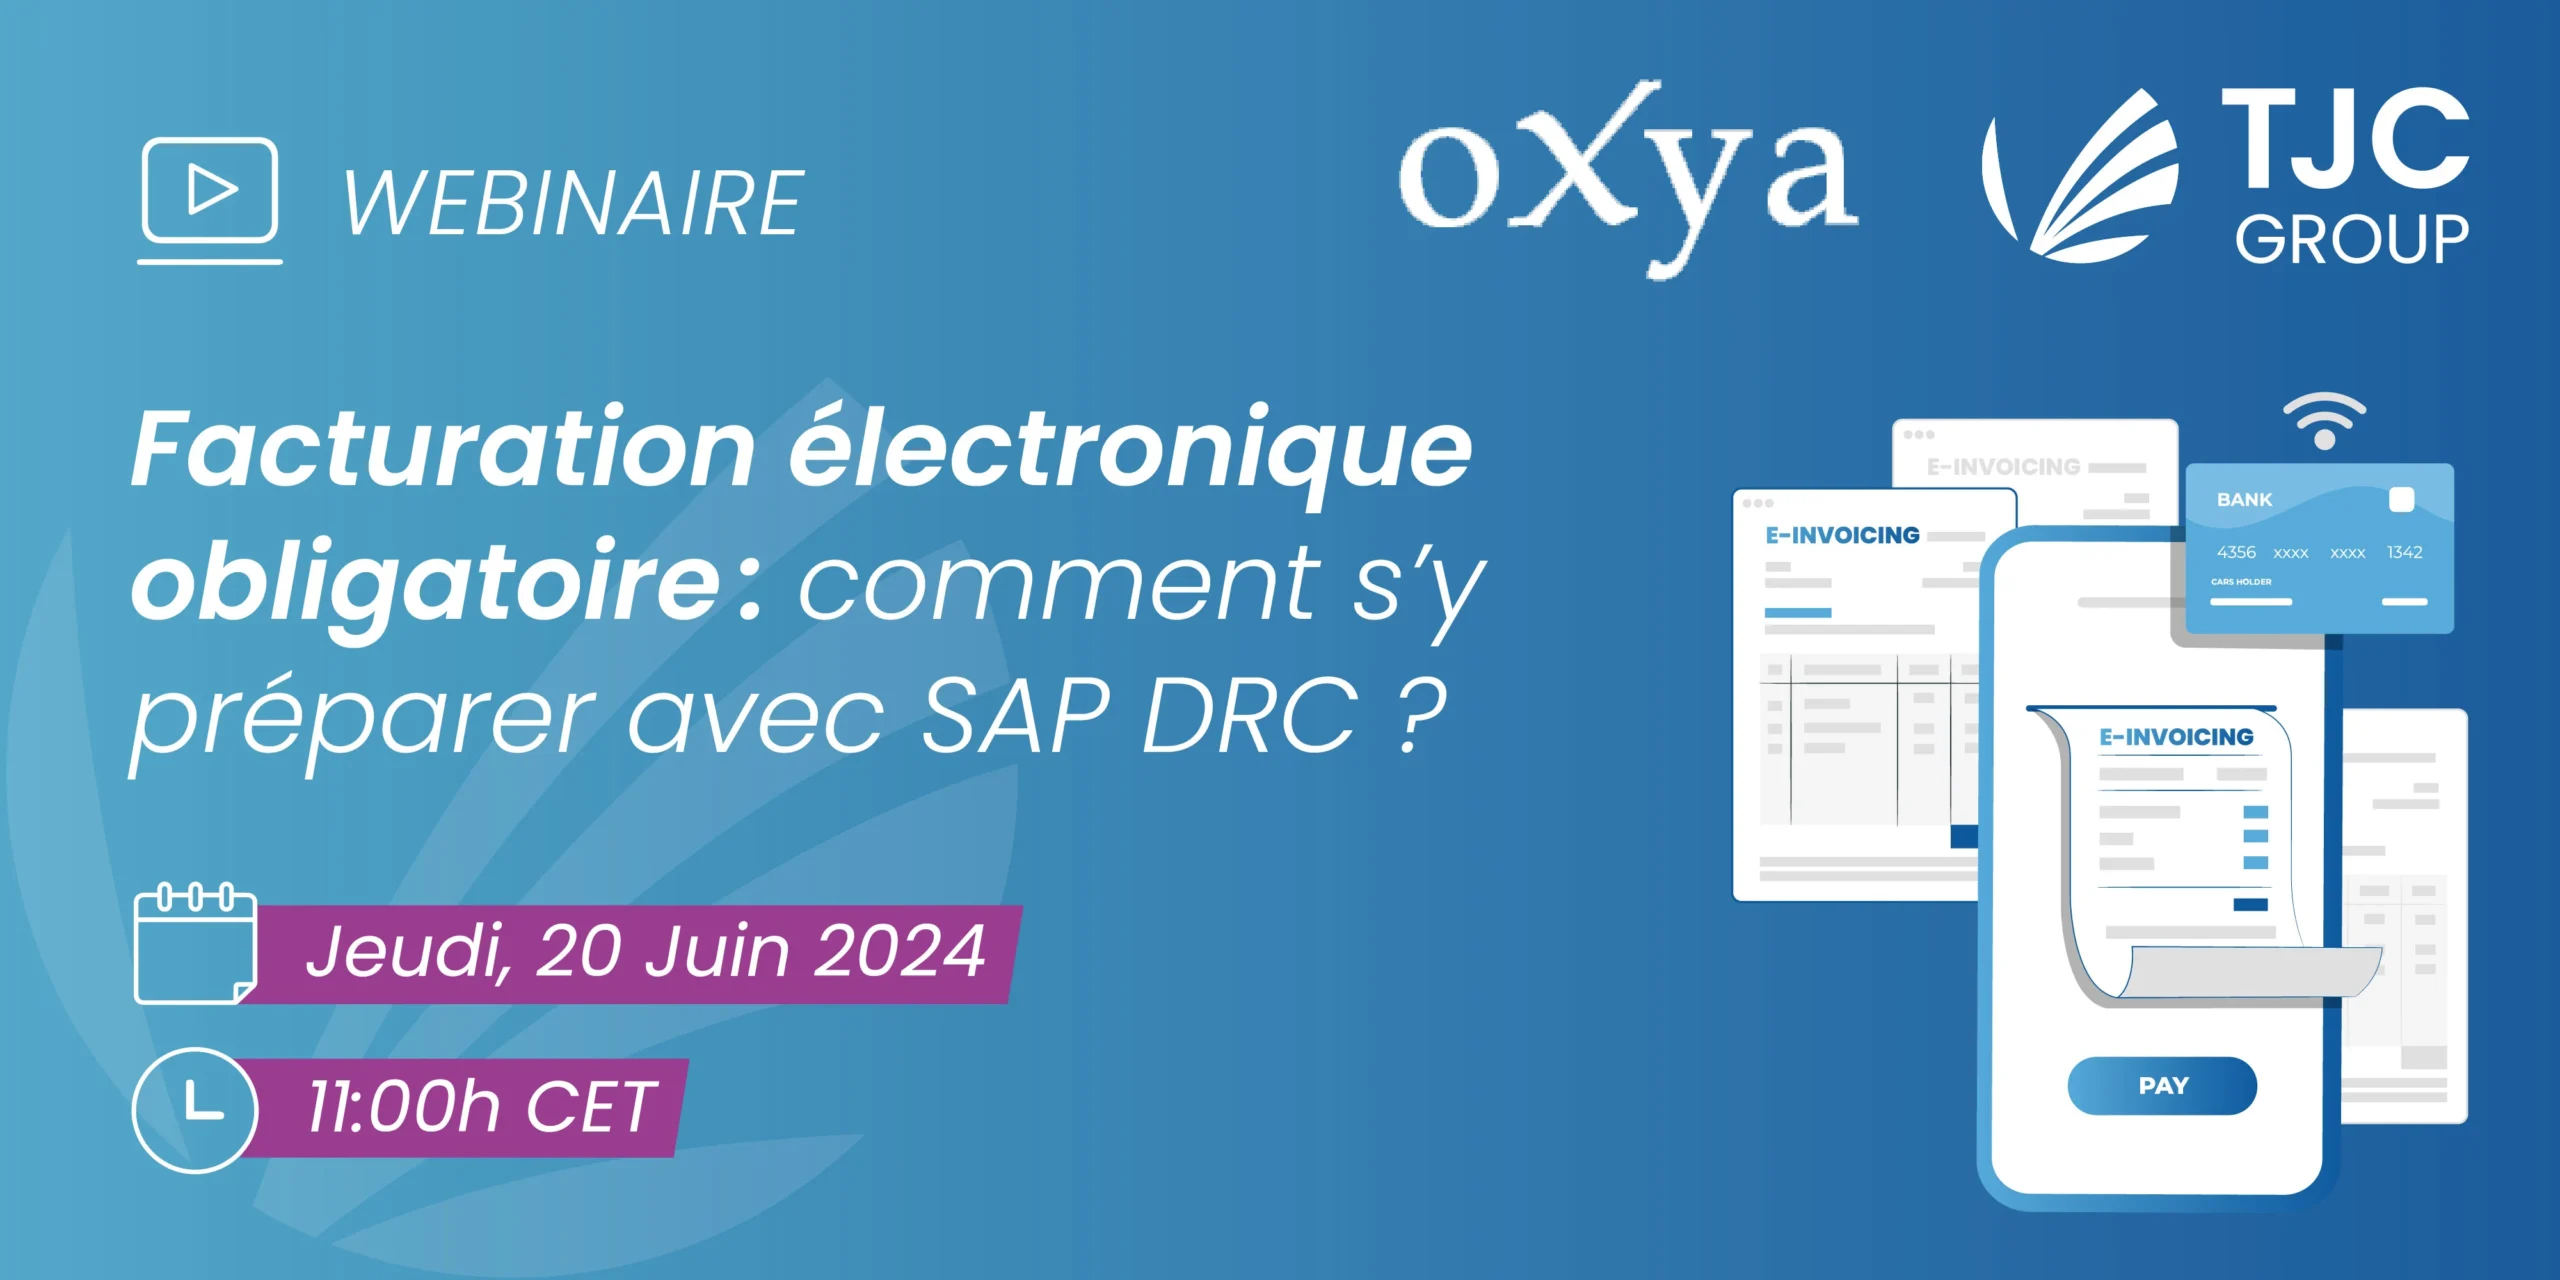 Webinaire TJC Group e-invoicing SAP DRC France